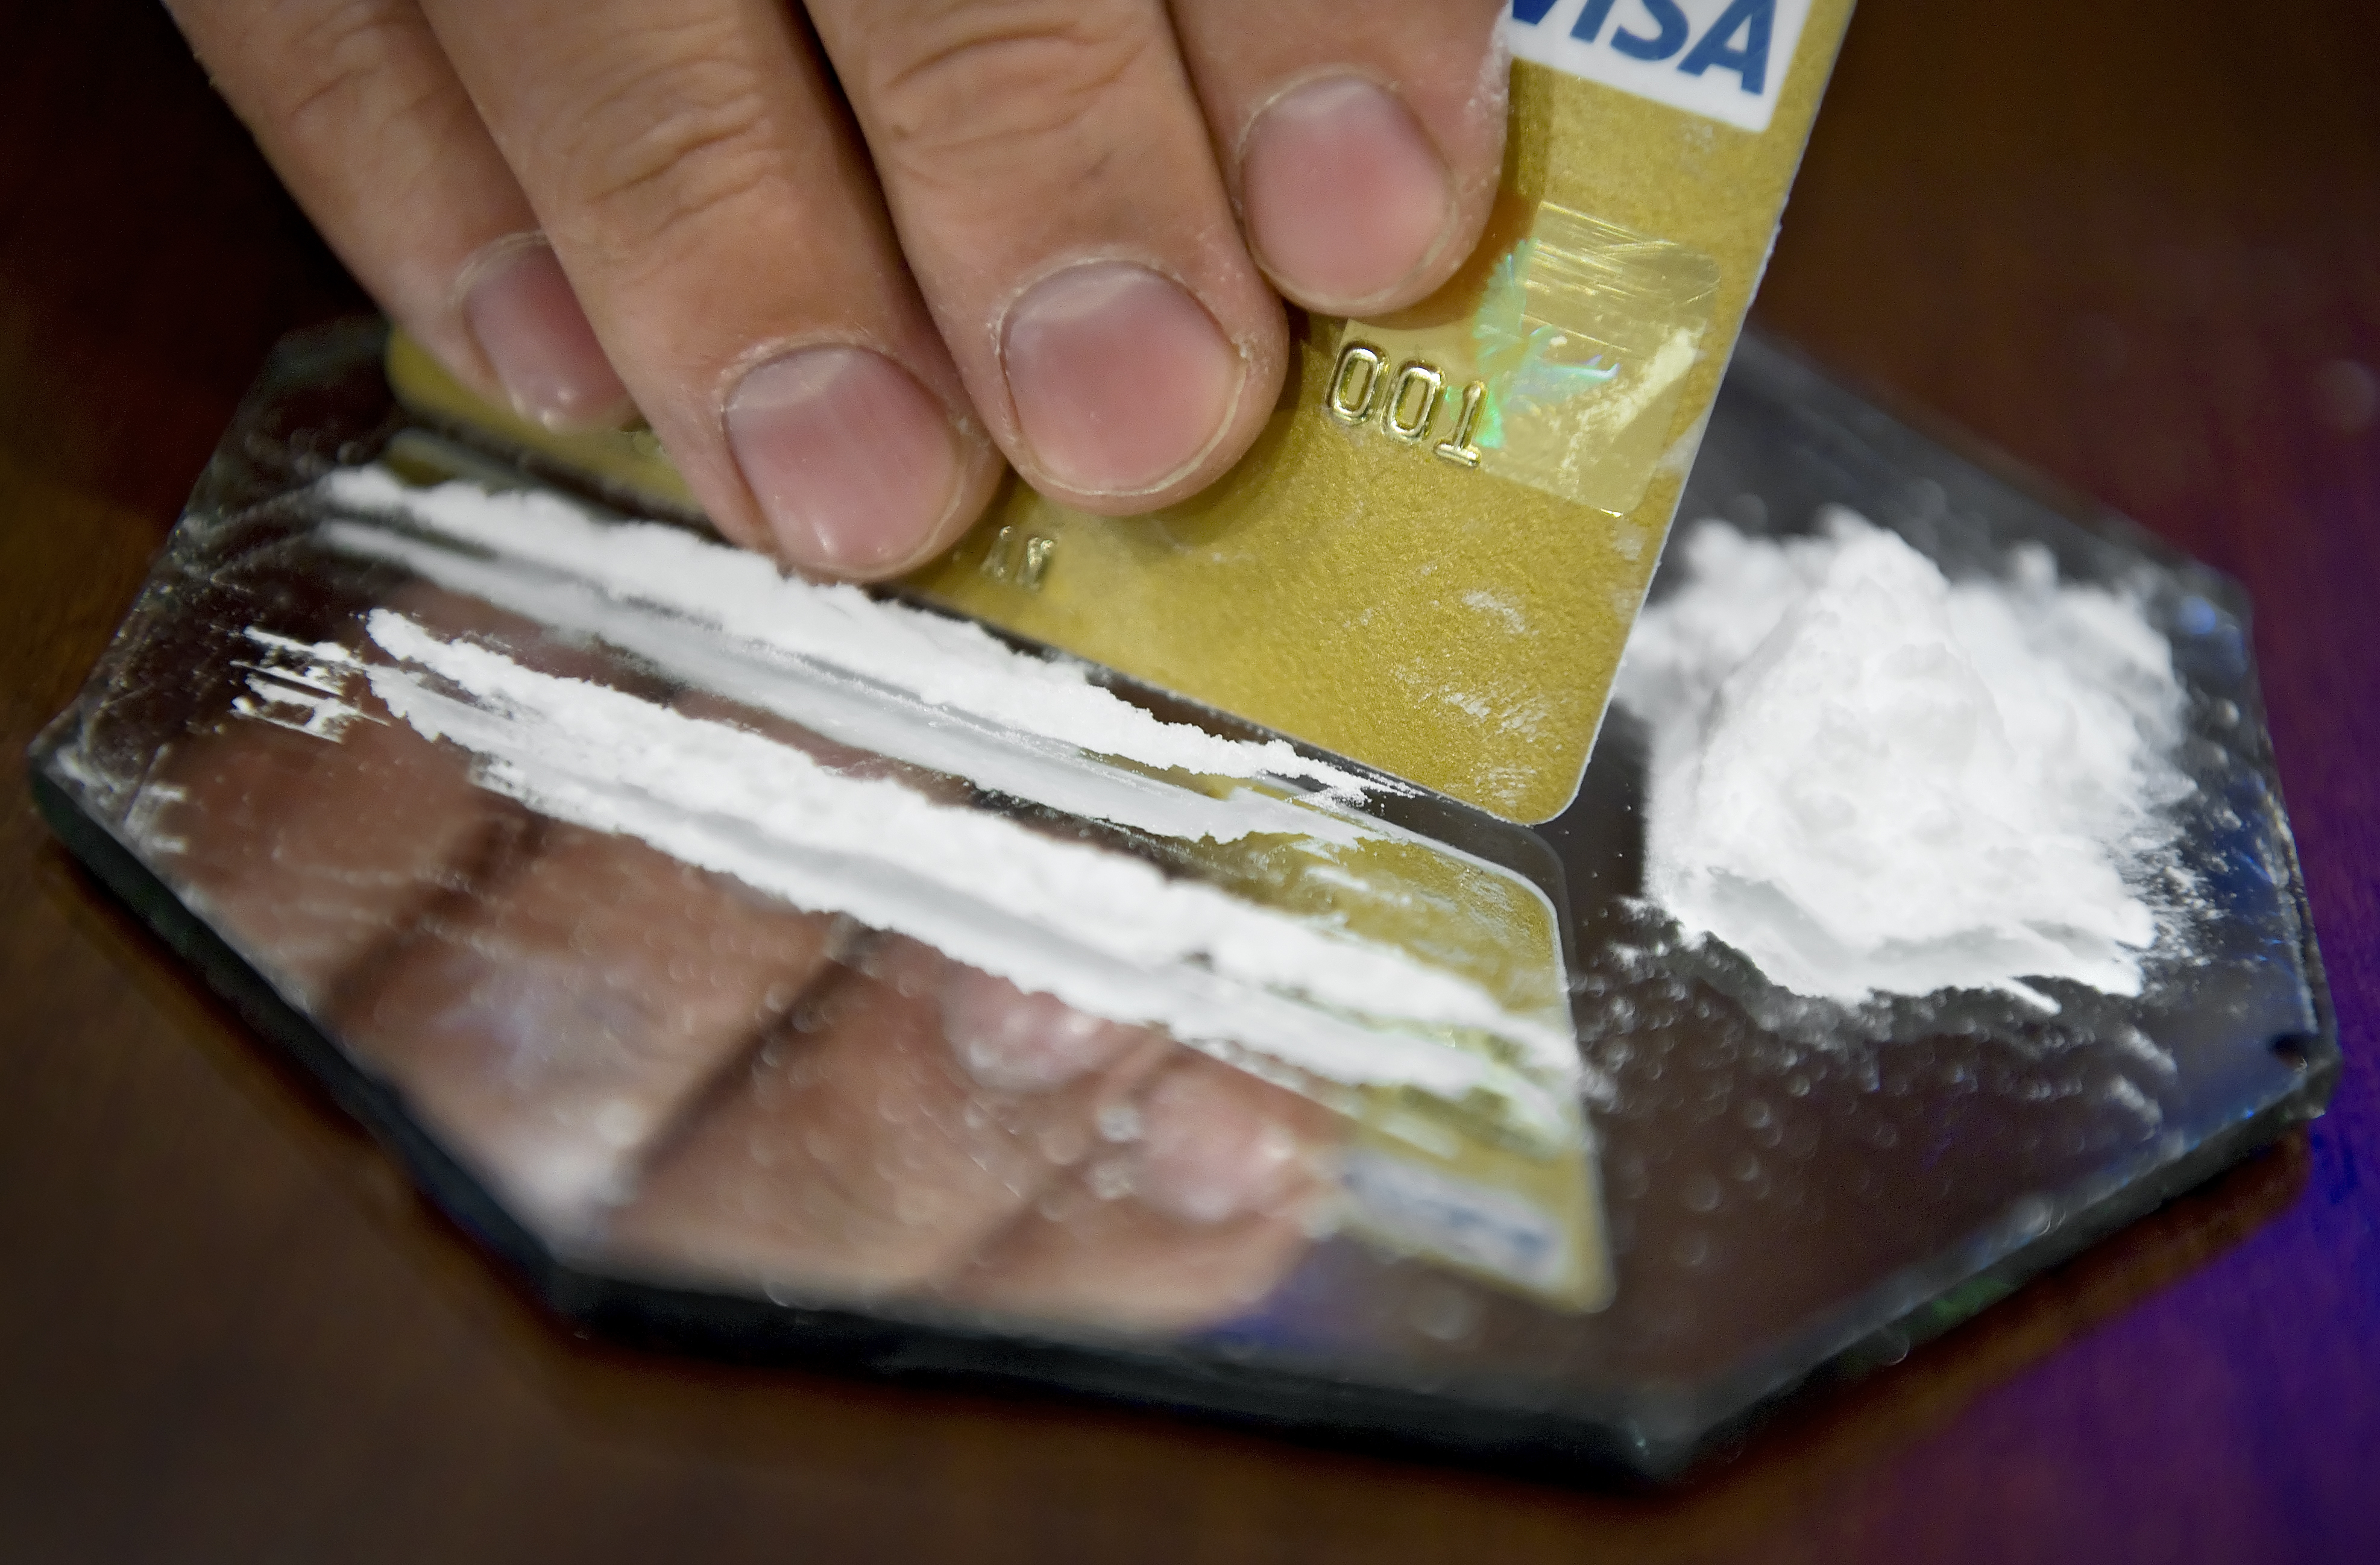 Flickan köpte kokain och cannabis för 3 600 kronor som de senare tog i lägenheten.